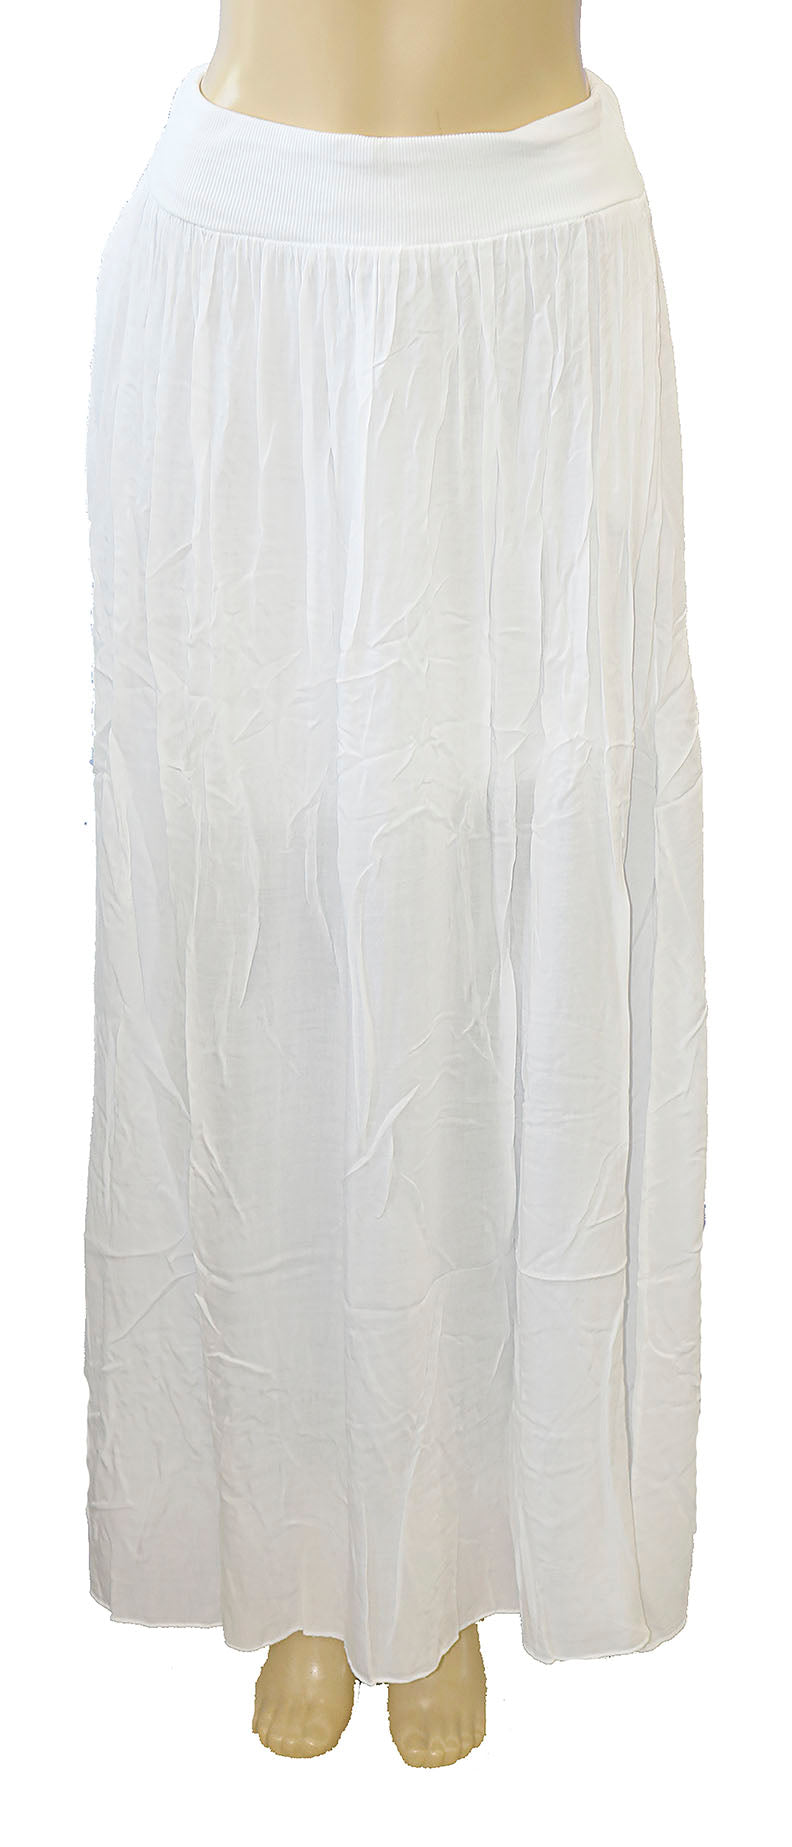 Impulse California Women's White Maxi Skirt